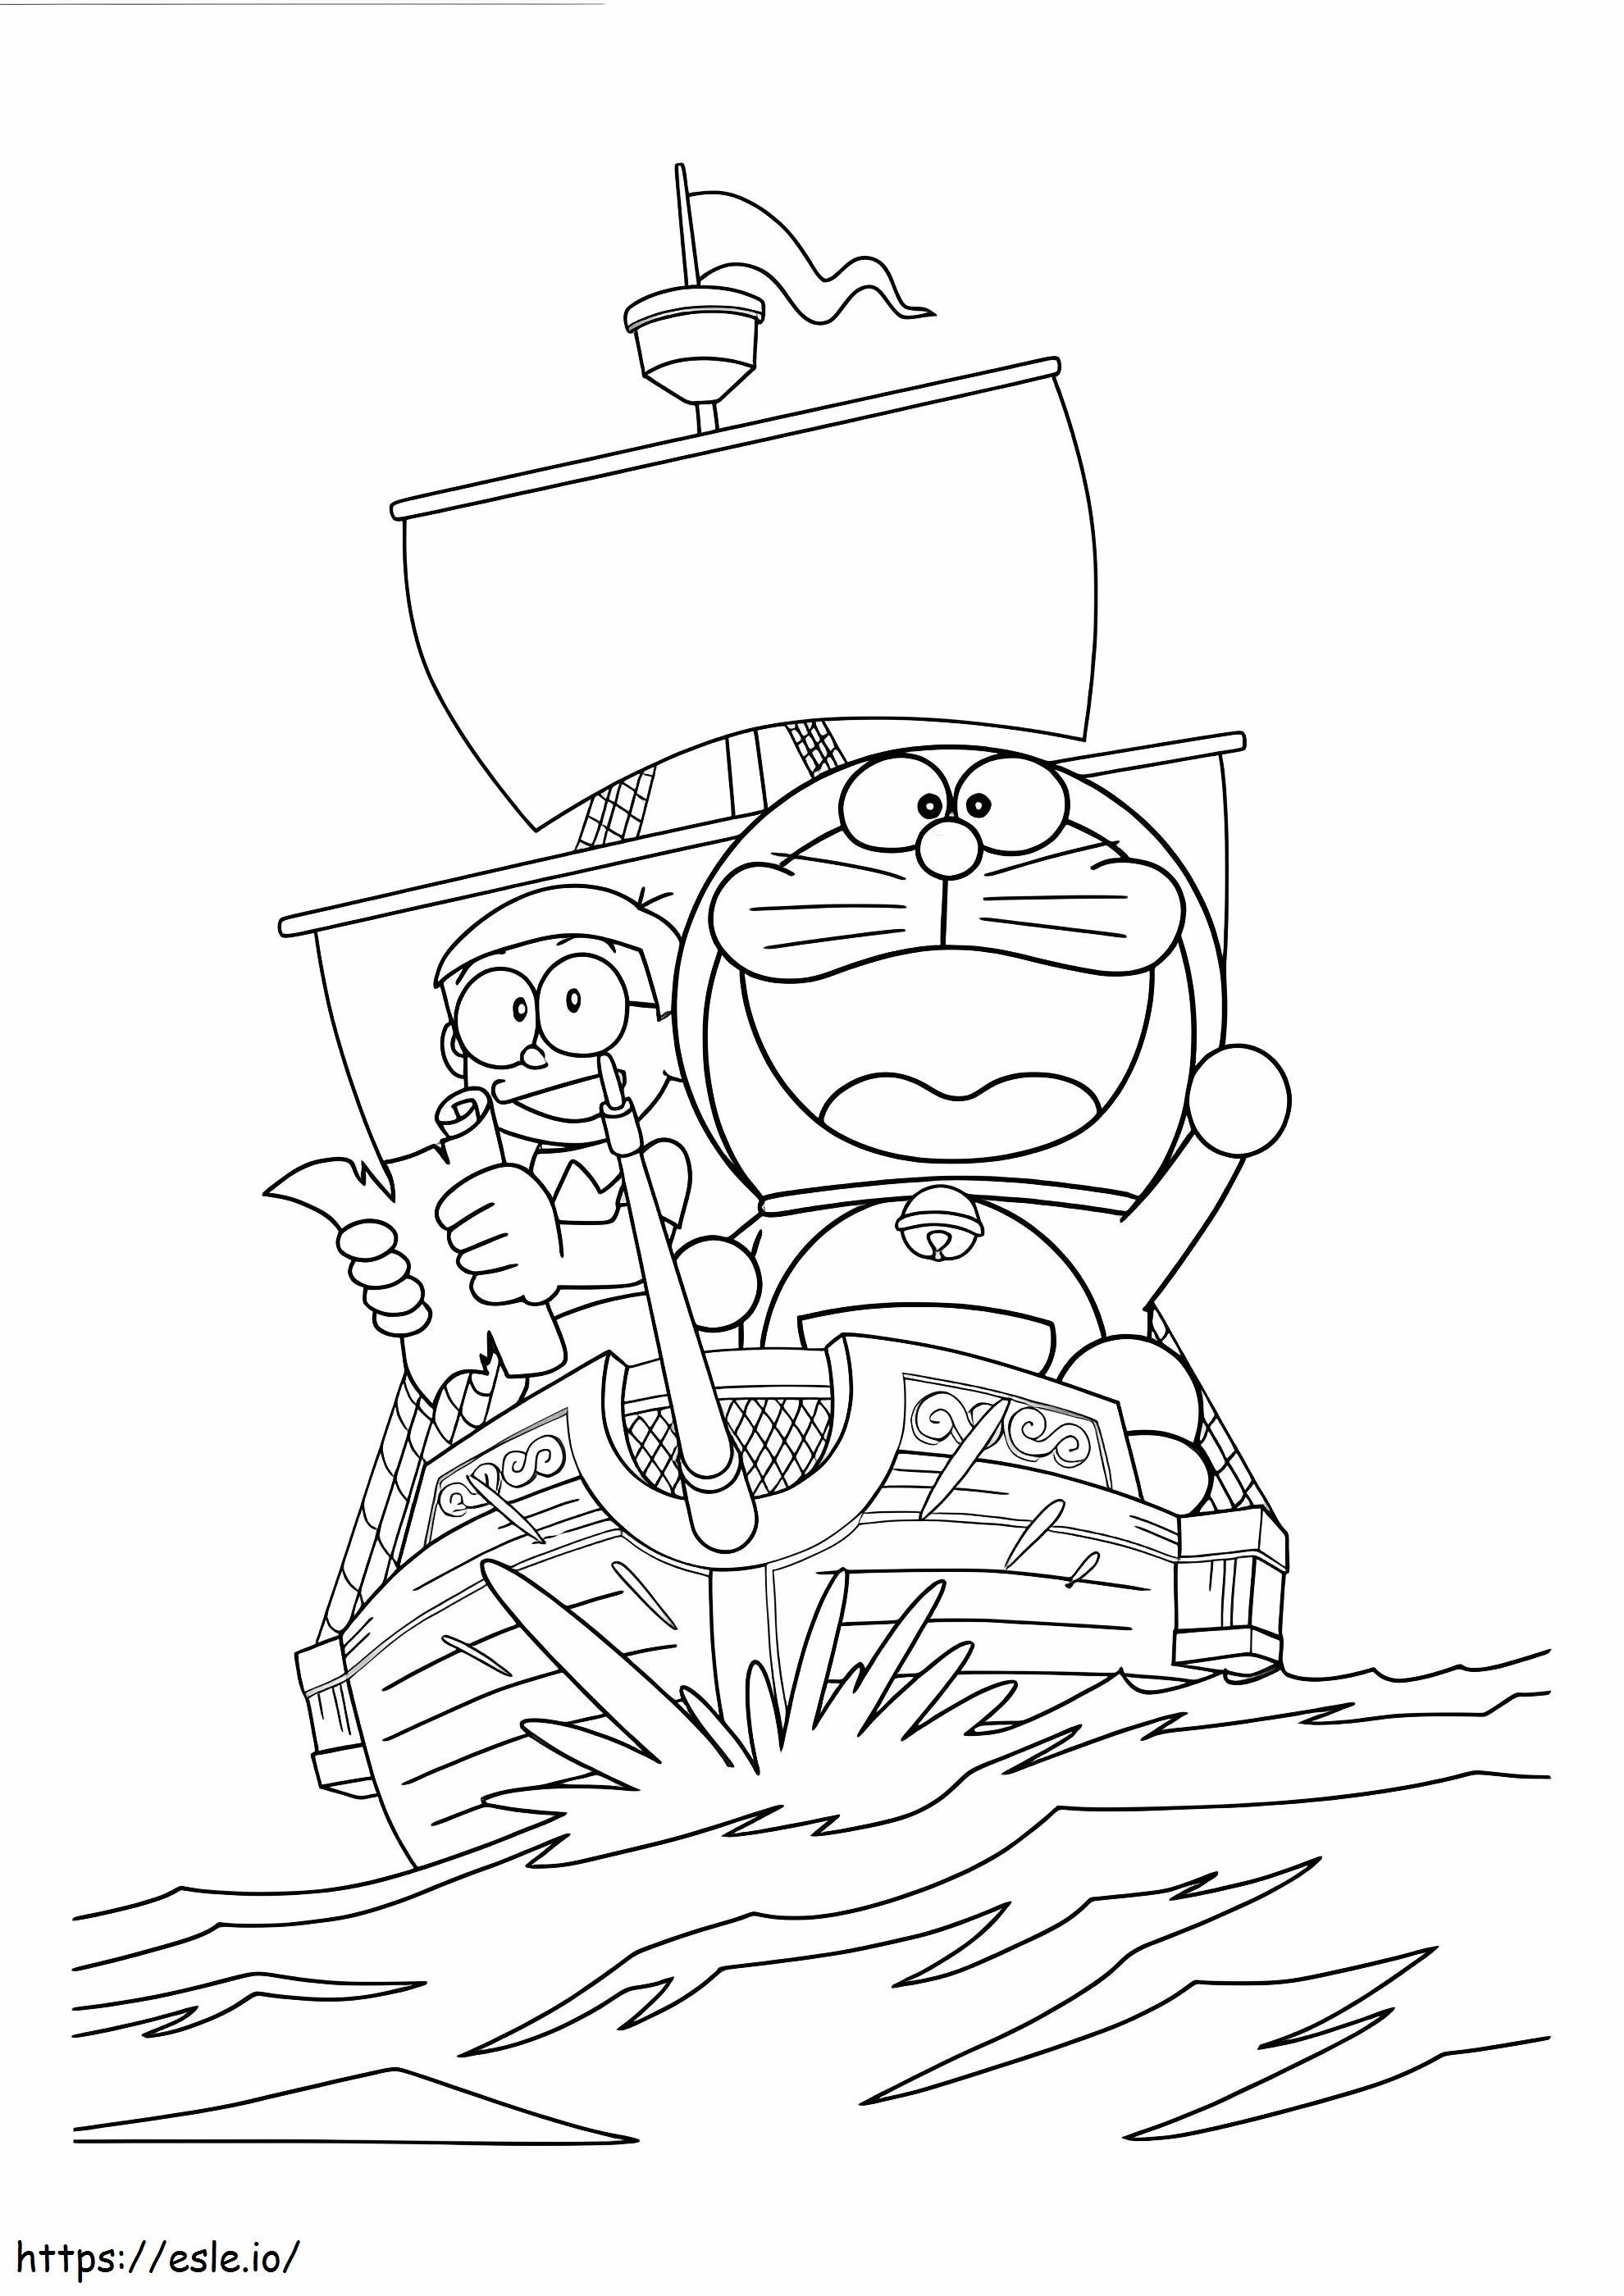 Nobita și Doraemon navighează pe barcă de colorat